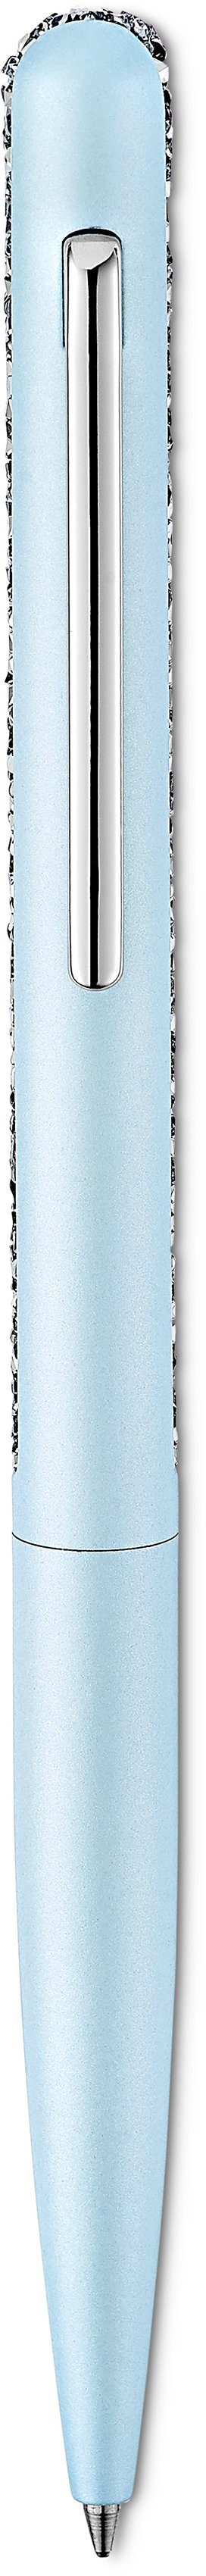 Swarovski Kugelschreiber Crystal Shimmer, 5595669, 5595673, 5595667, Swarovski® Kristallen 5595672, hellblau-metallfarben-kristallweiß mit 5595668, 5595671